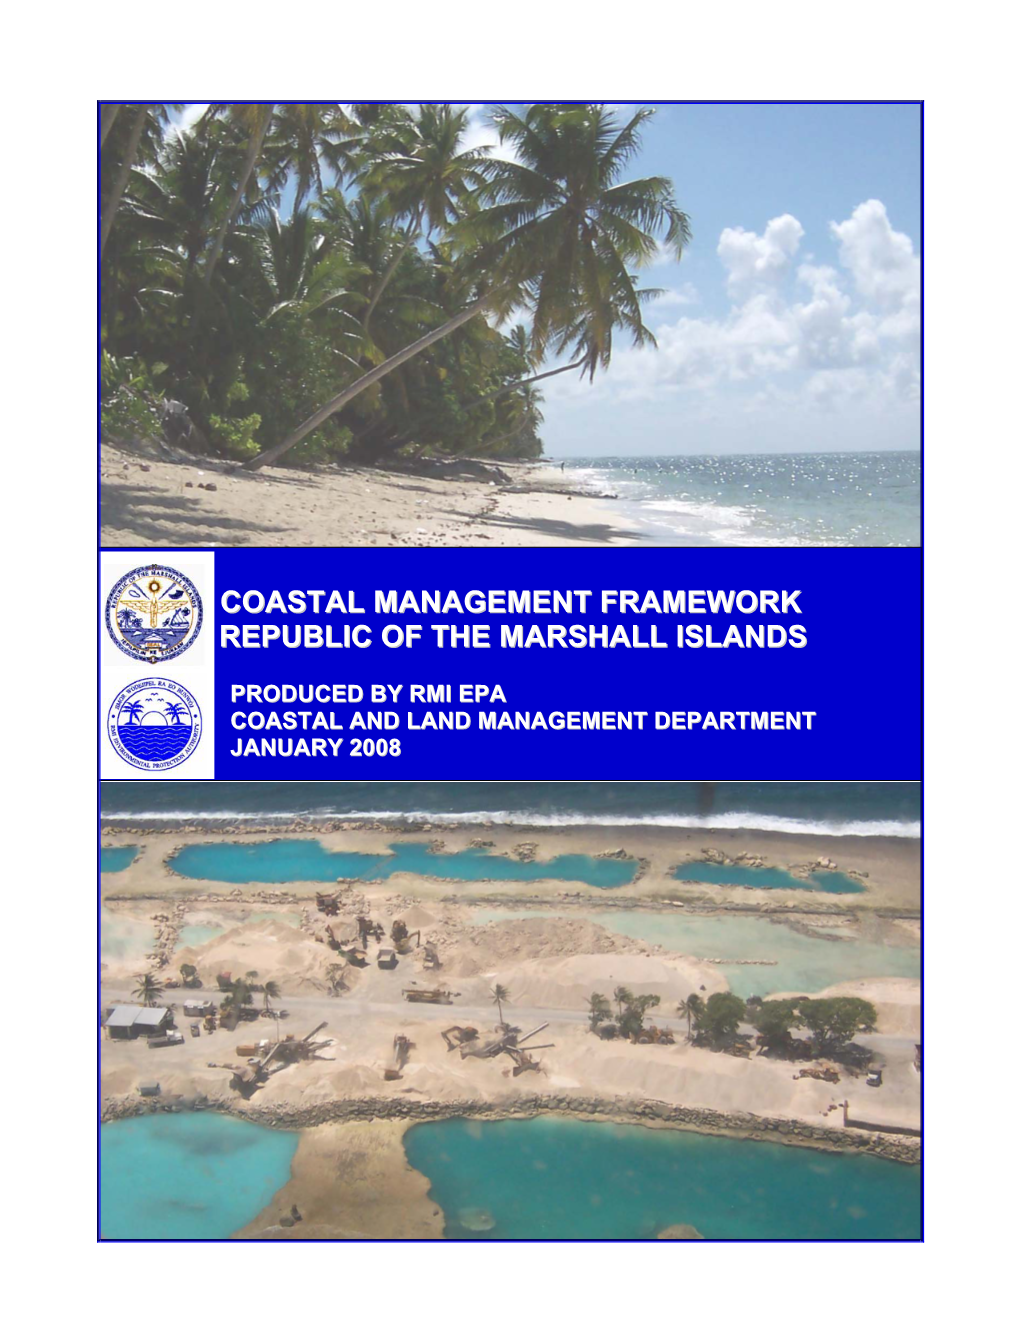 Coastal Management Framework Republic of the Marshall Islands